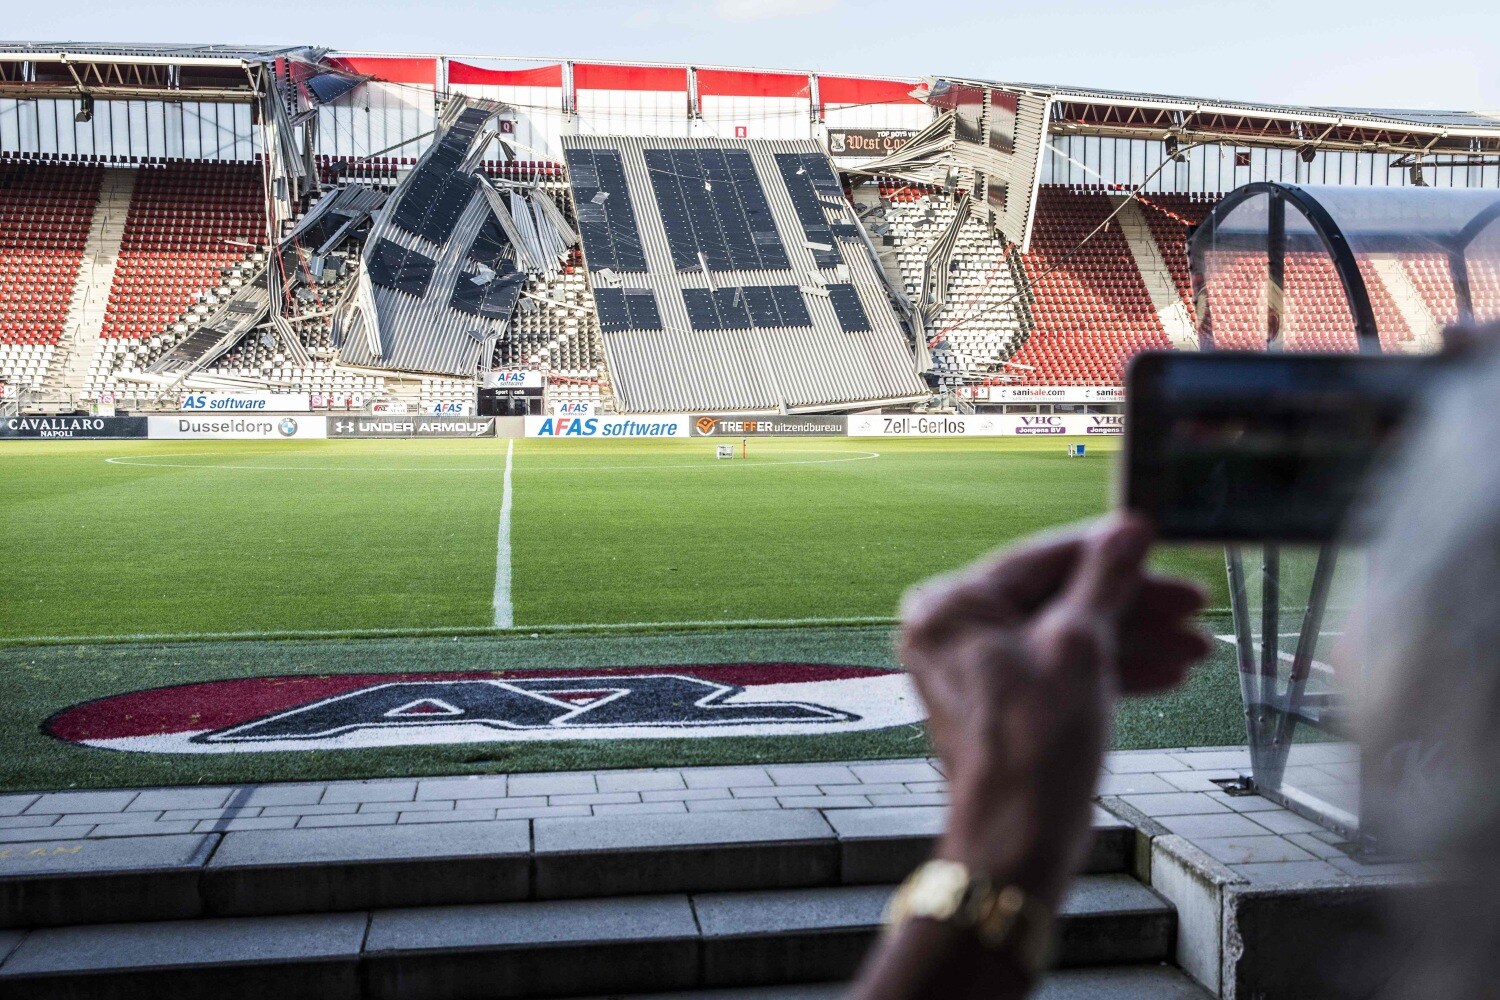 Vista de la sección derrumbada en el estadio AFAS del club de fútbol AZ Alkmaar en Holanda